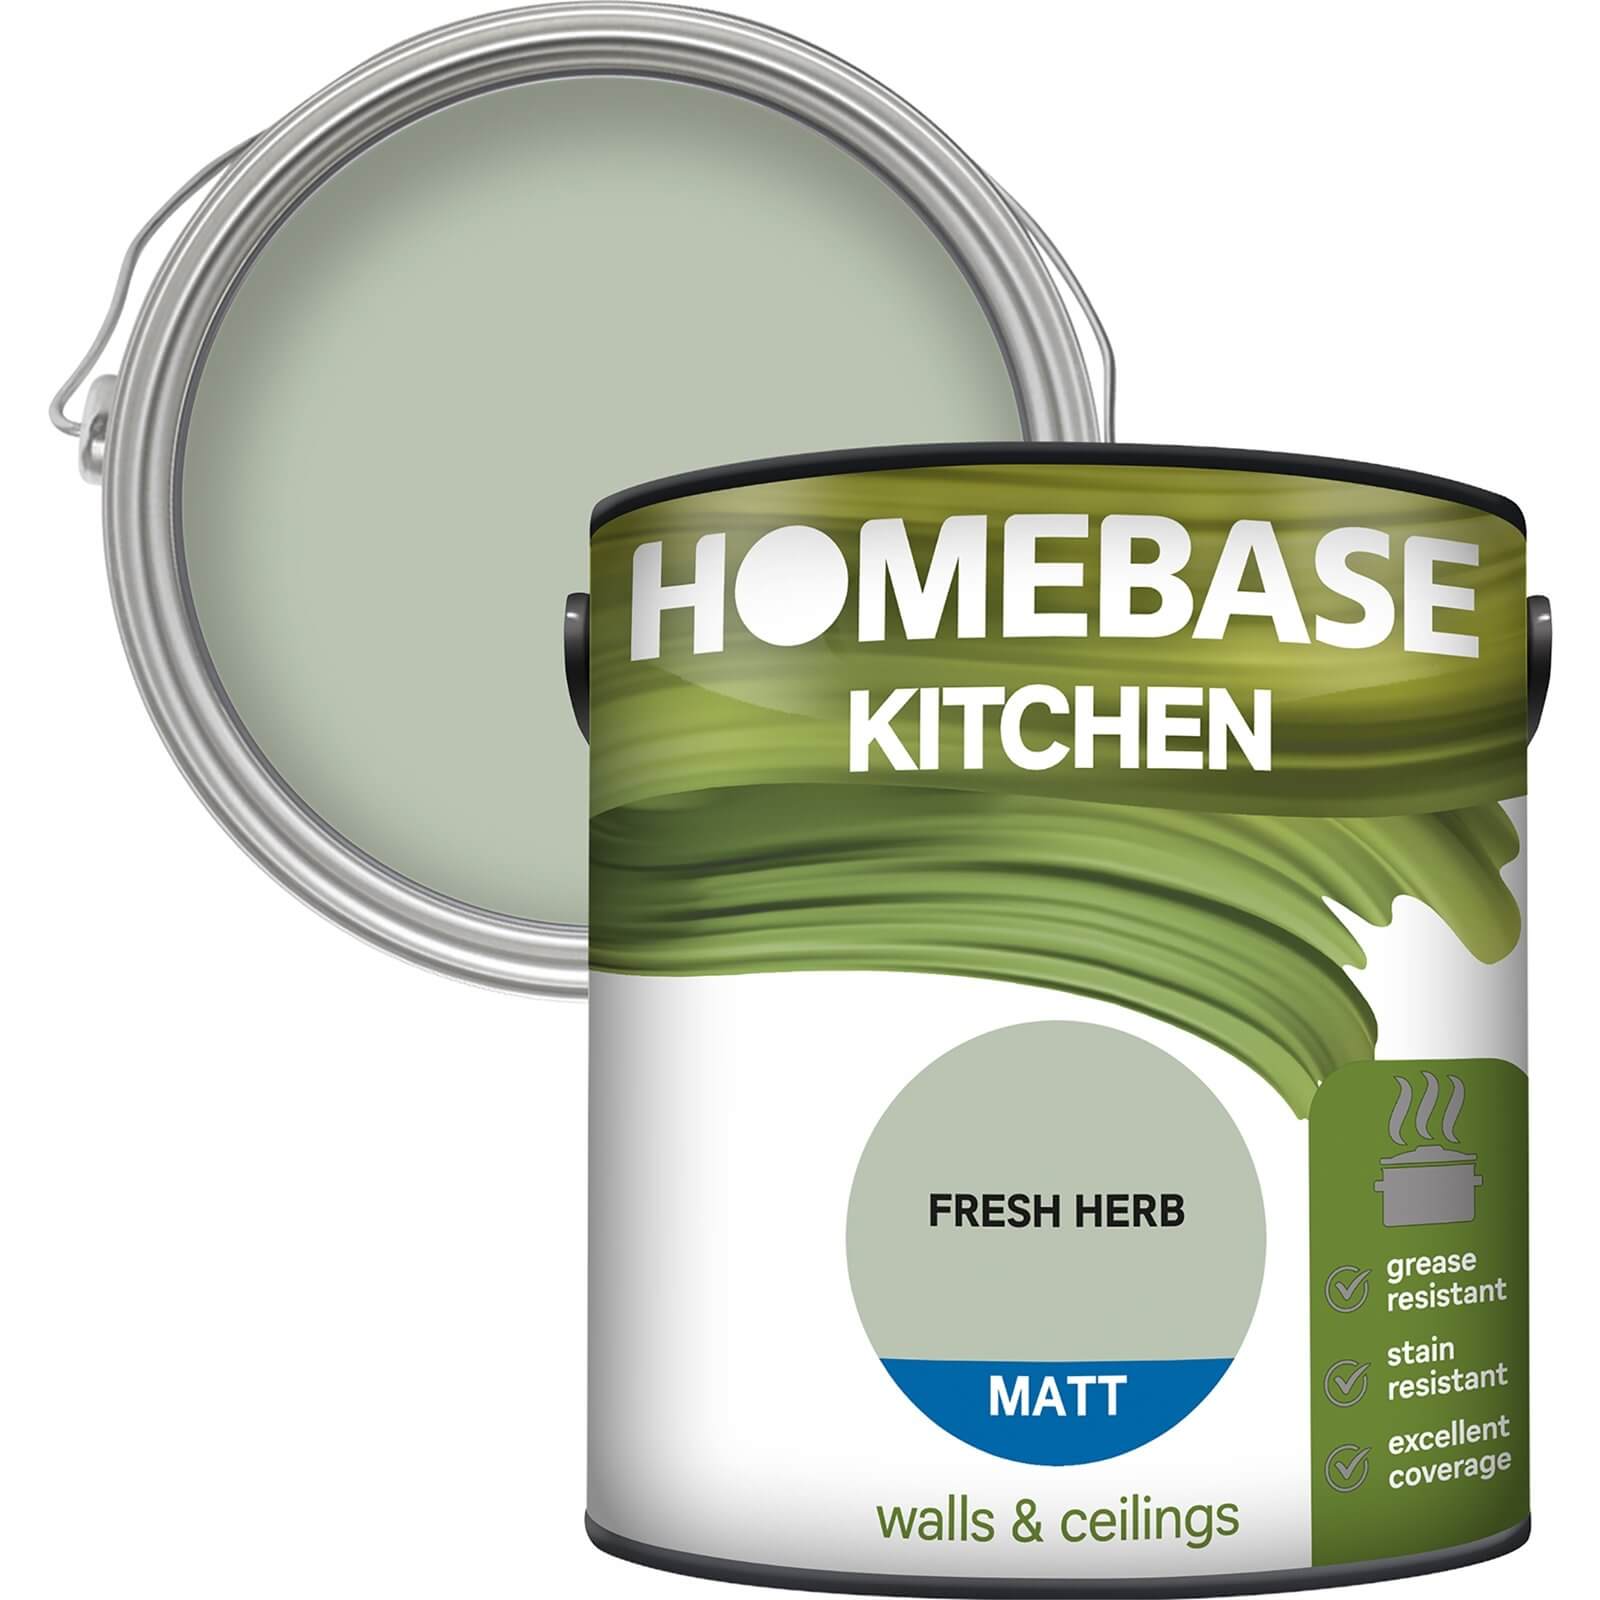 Photo of Homebase Kitchen Matt Paint - Fresh Herb 2.5l